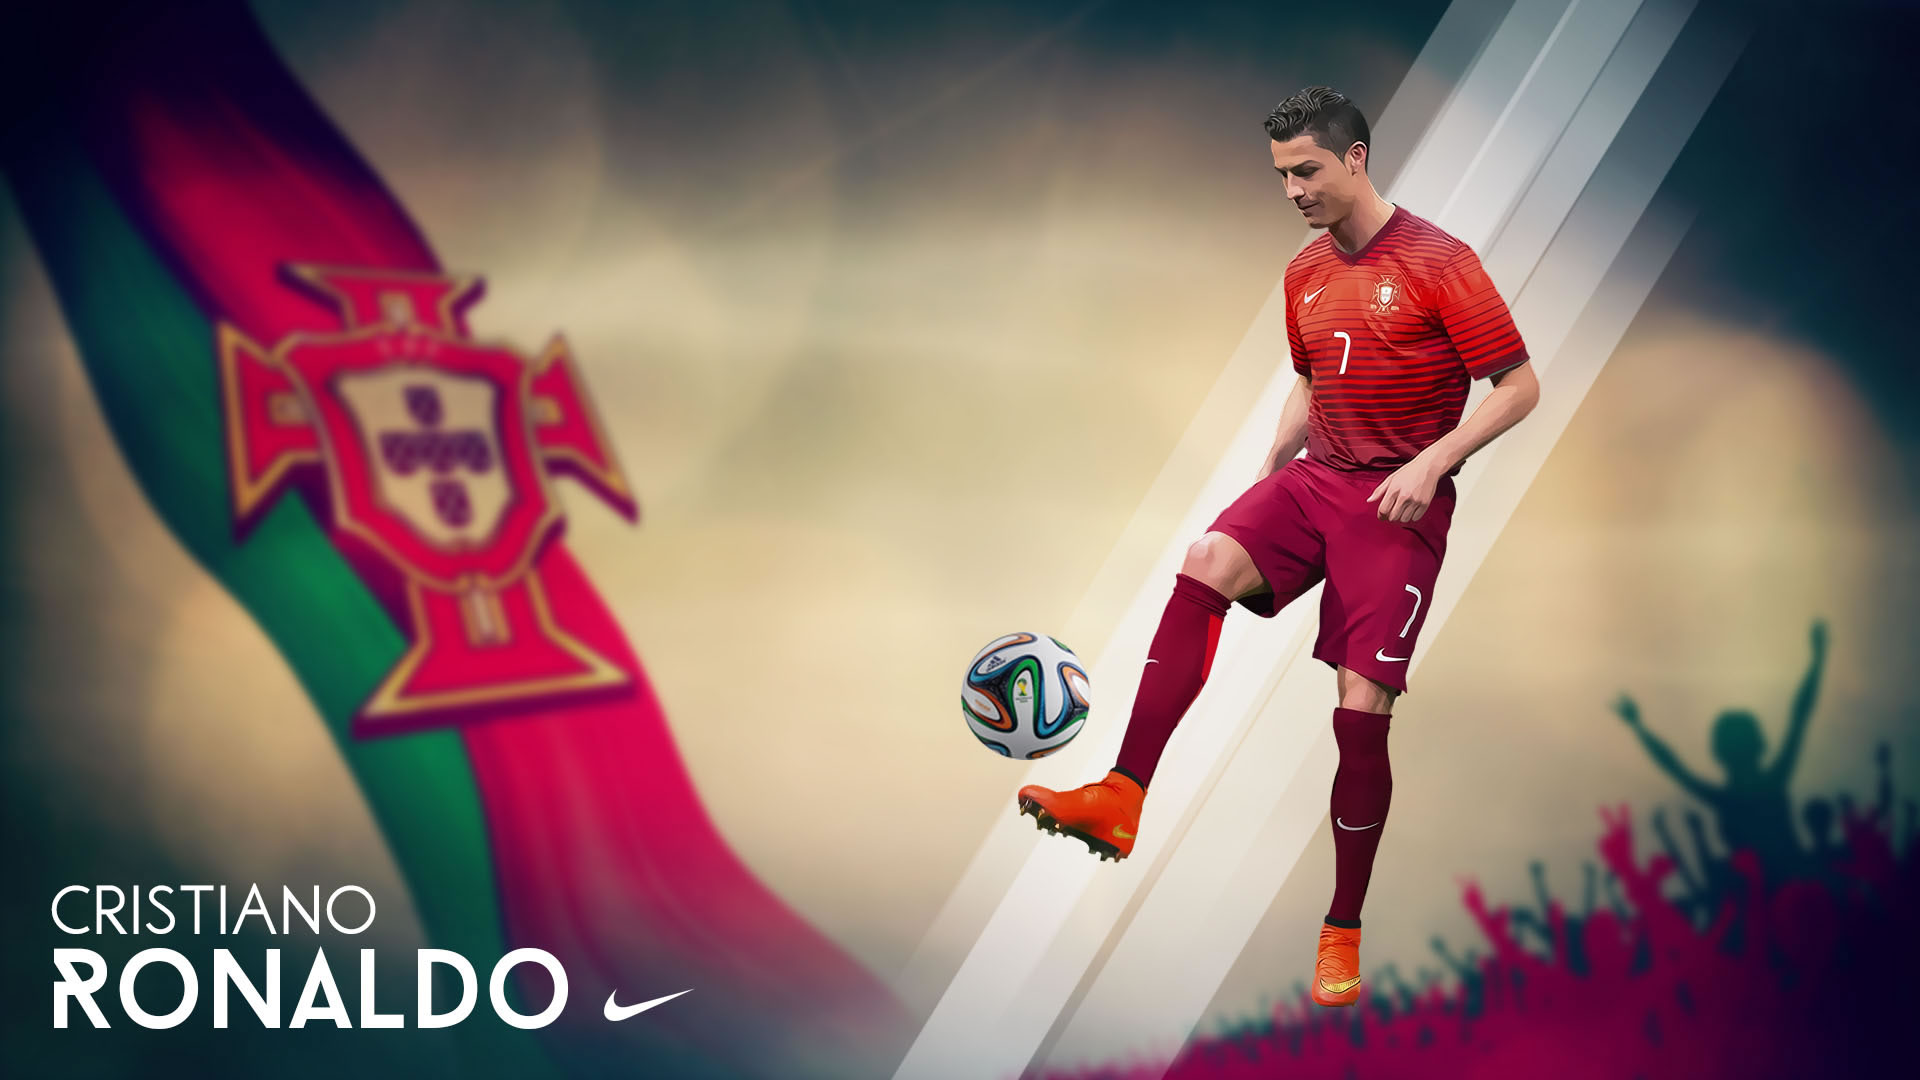 Cristiano Ronaldo Portugal 2014 World Cup Wallpaper - Cristiano ...